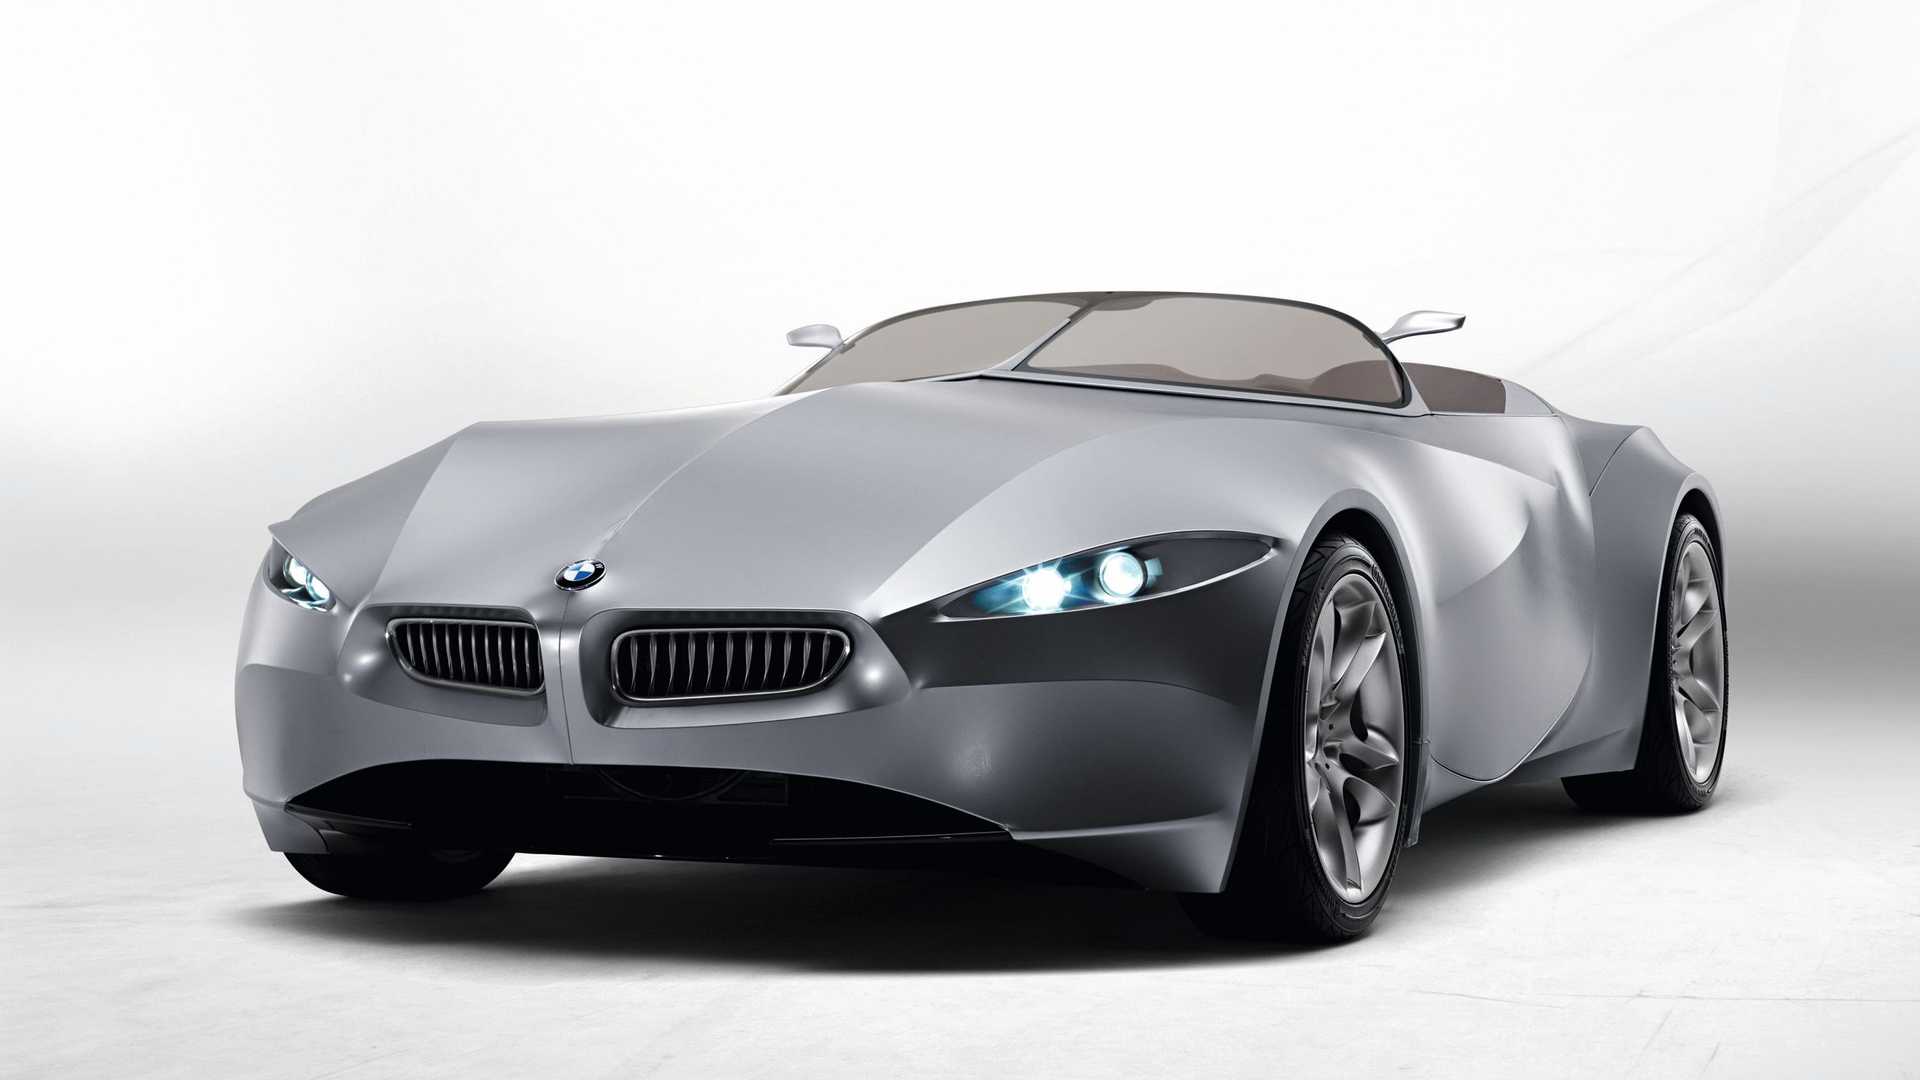 نمای سه چهارم خودروی مفهومی روباز بی ام و گینا / BMW GINA concept convertible با بدنه پارچه ای 